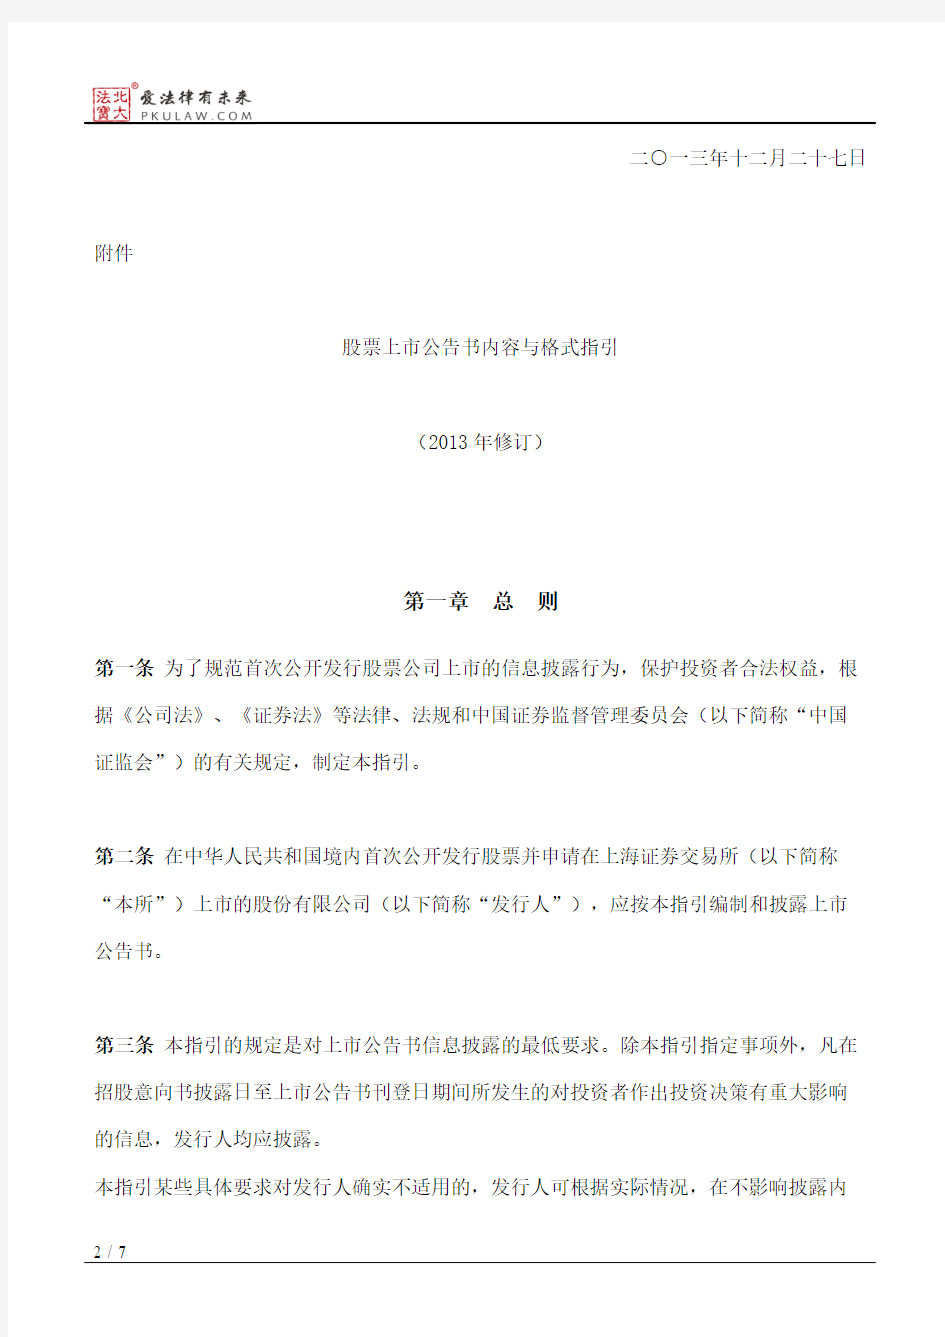 上海证券交易所关于发布《股票上市公告书内容与格式指引(2013年修